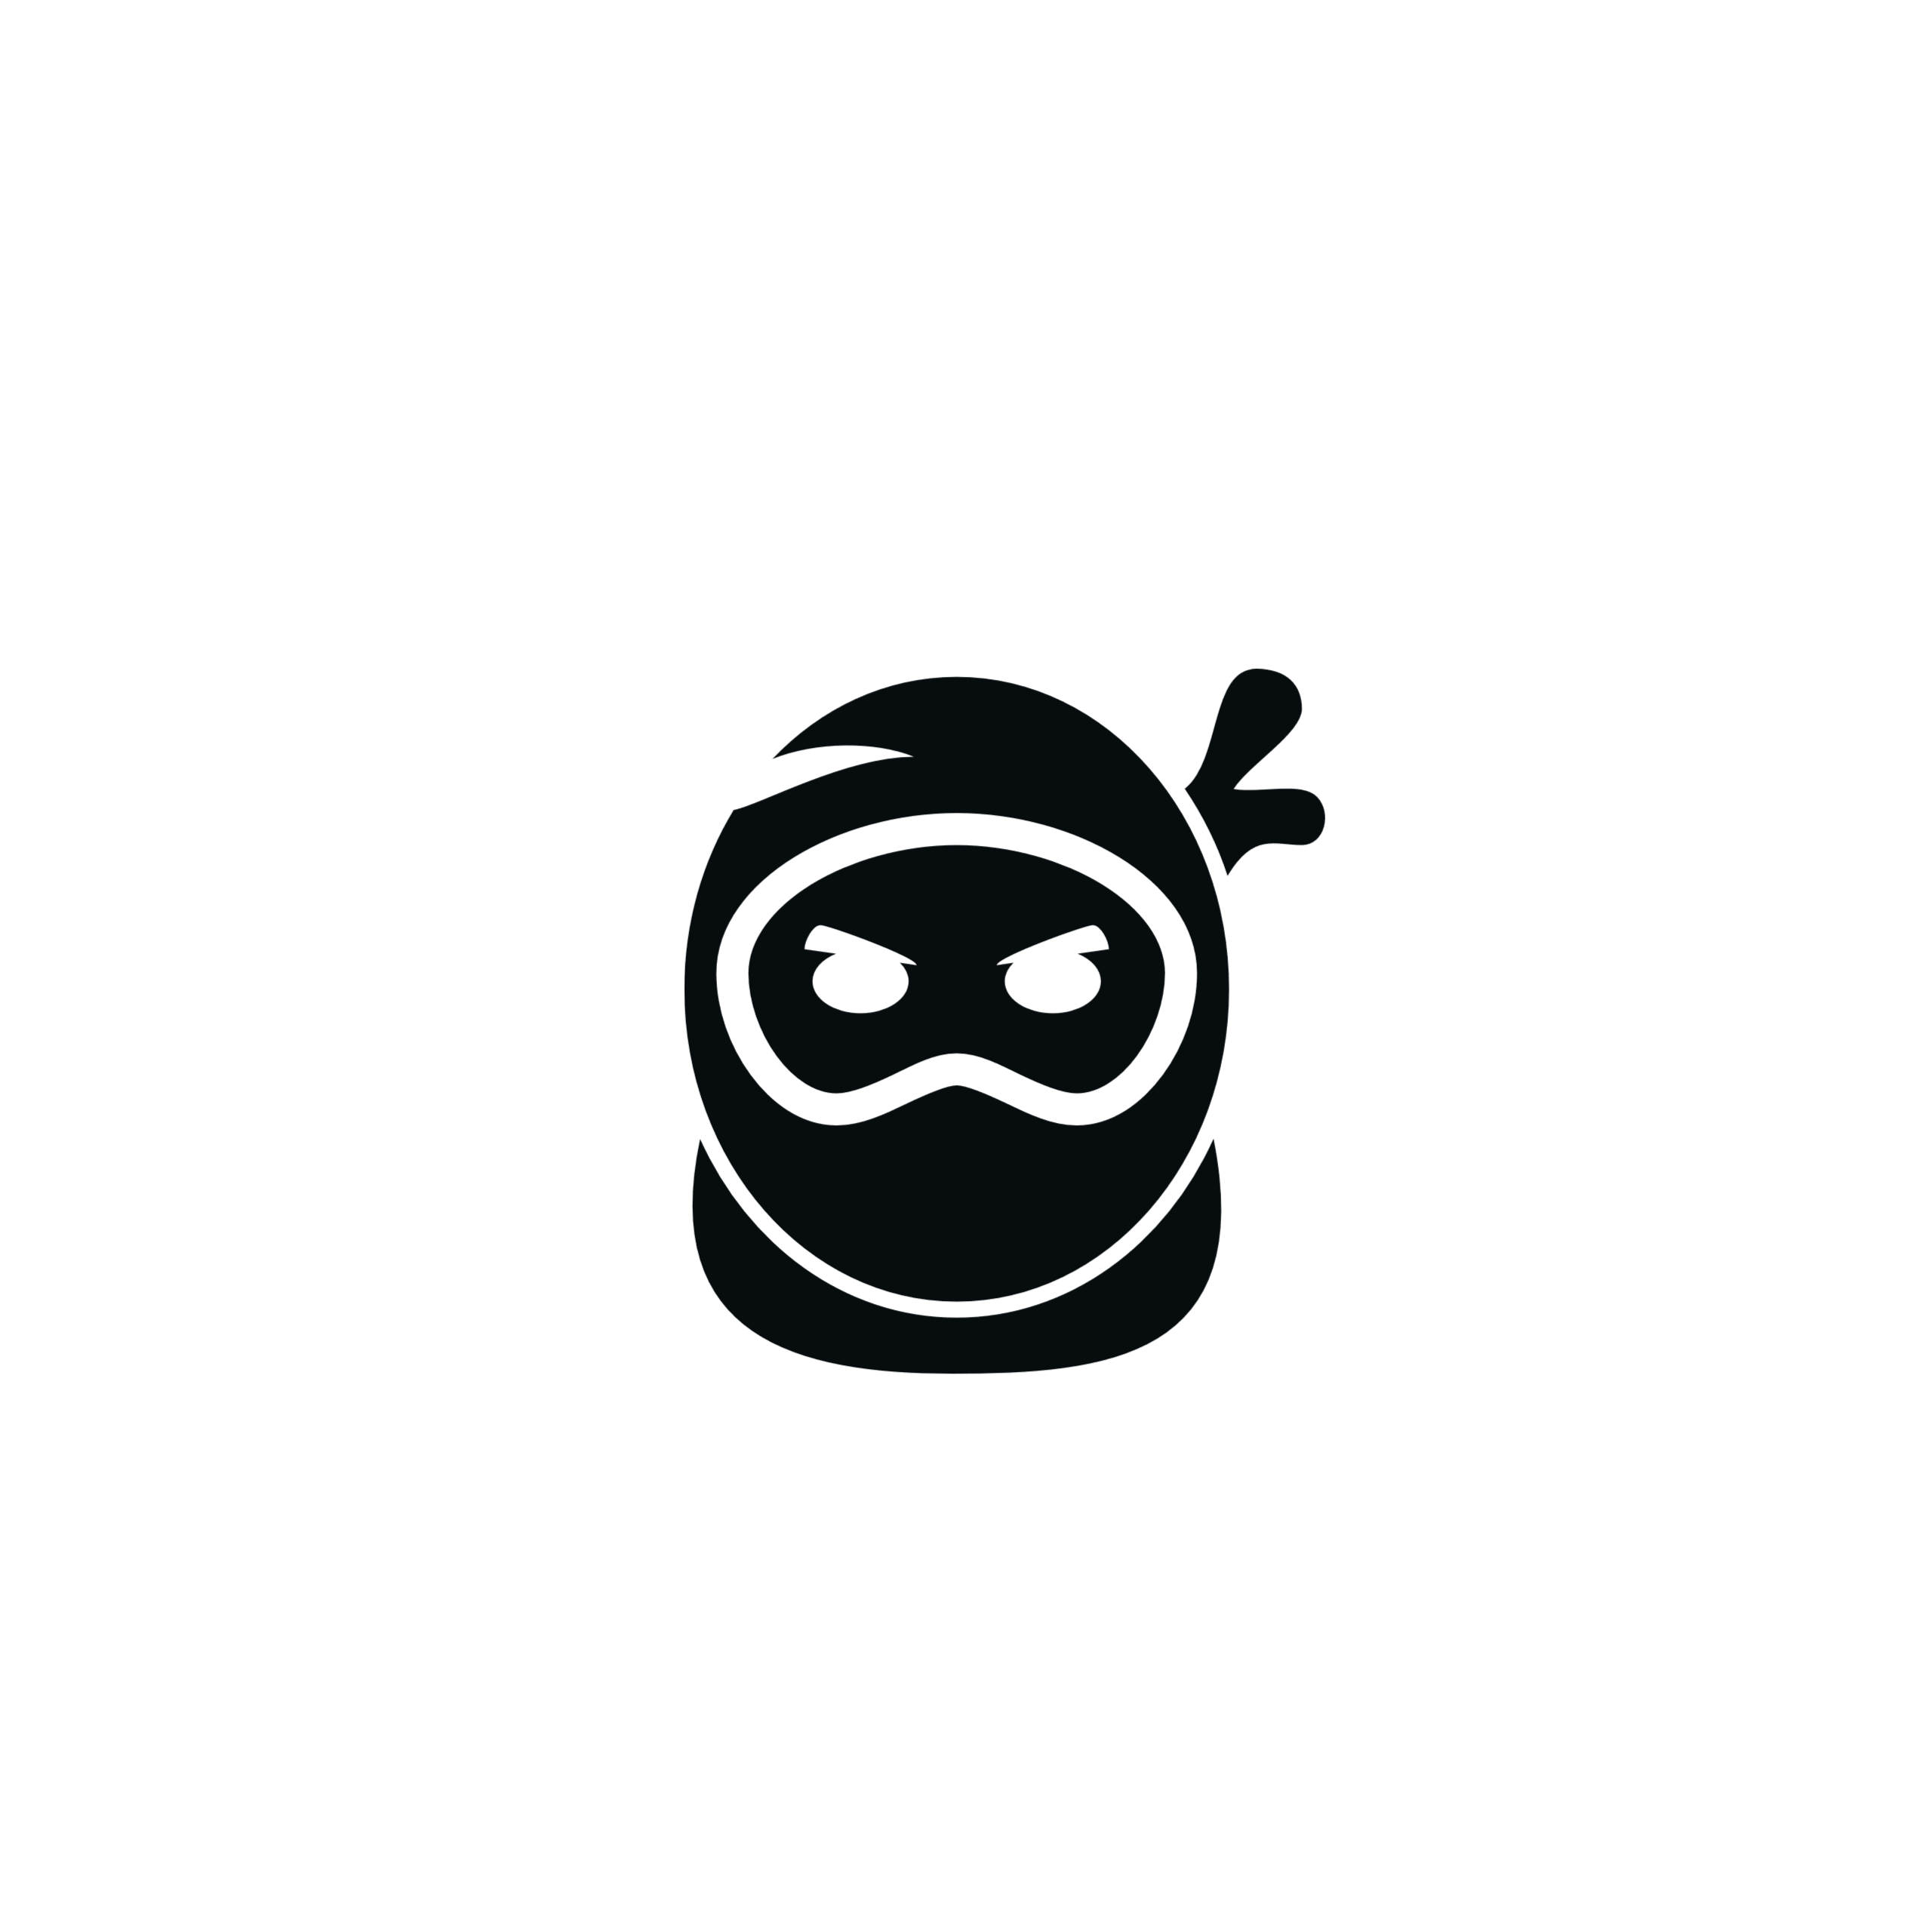 sudo-sec logo